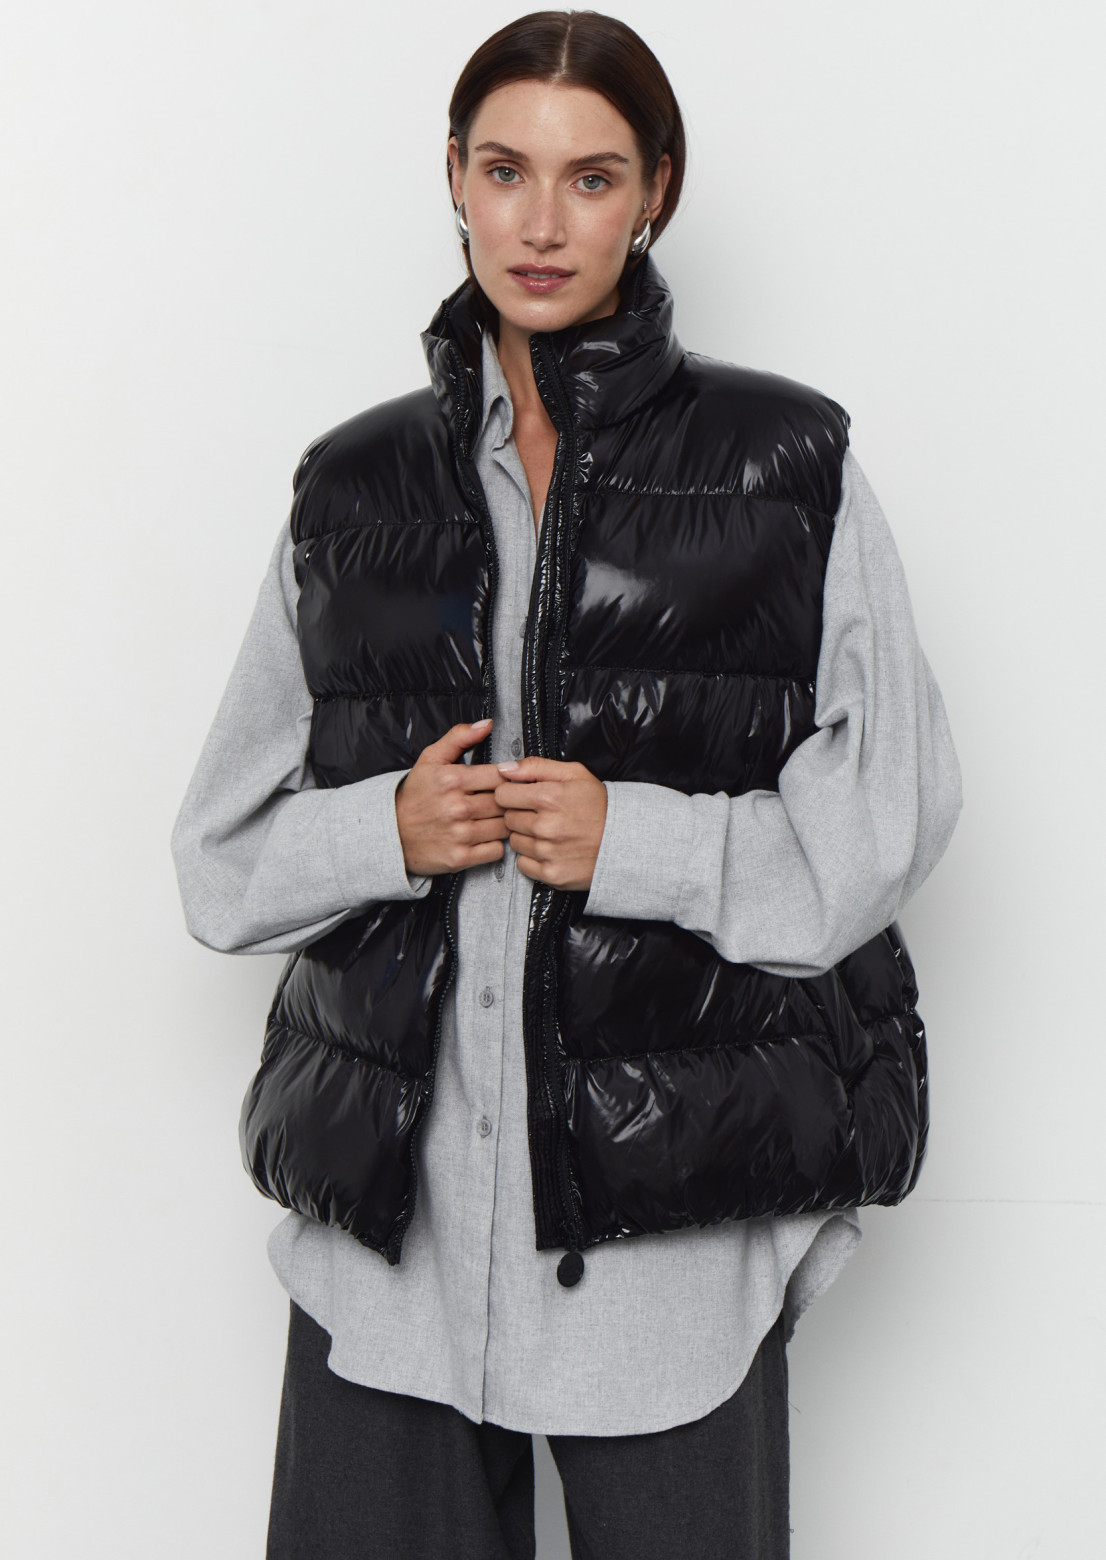 Women black color lacquered vest